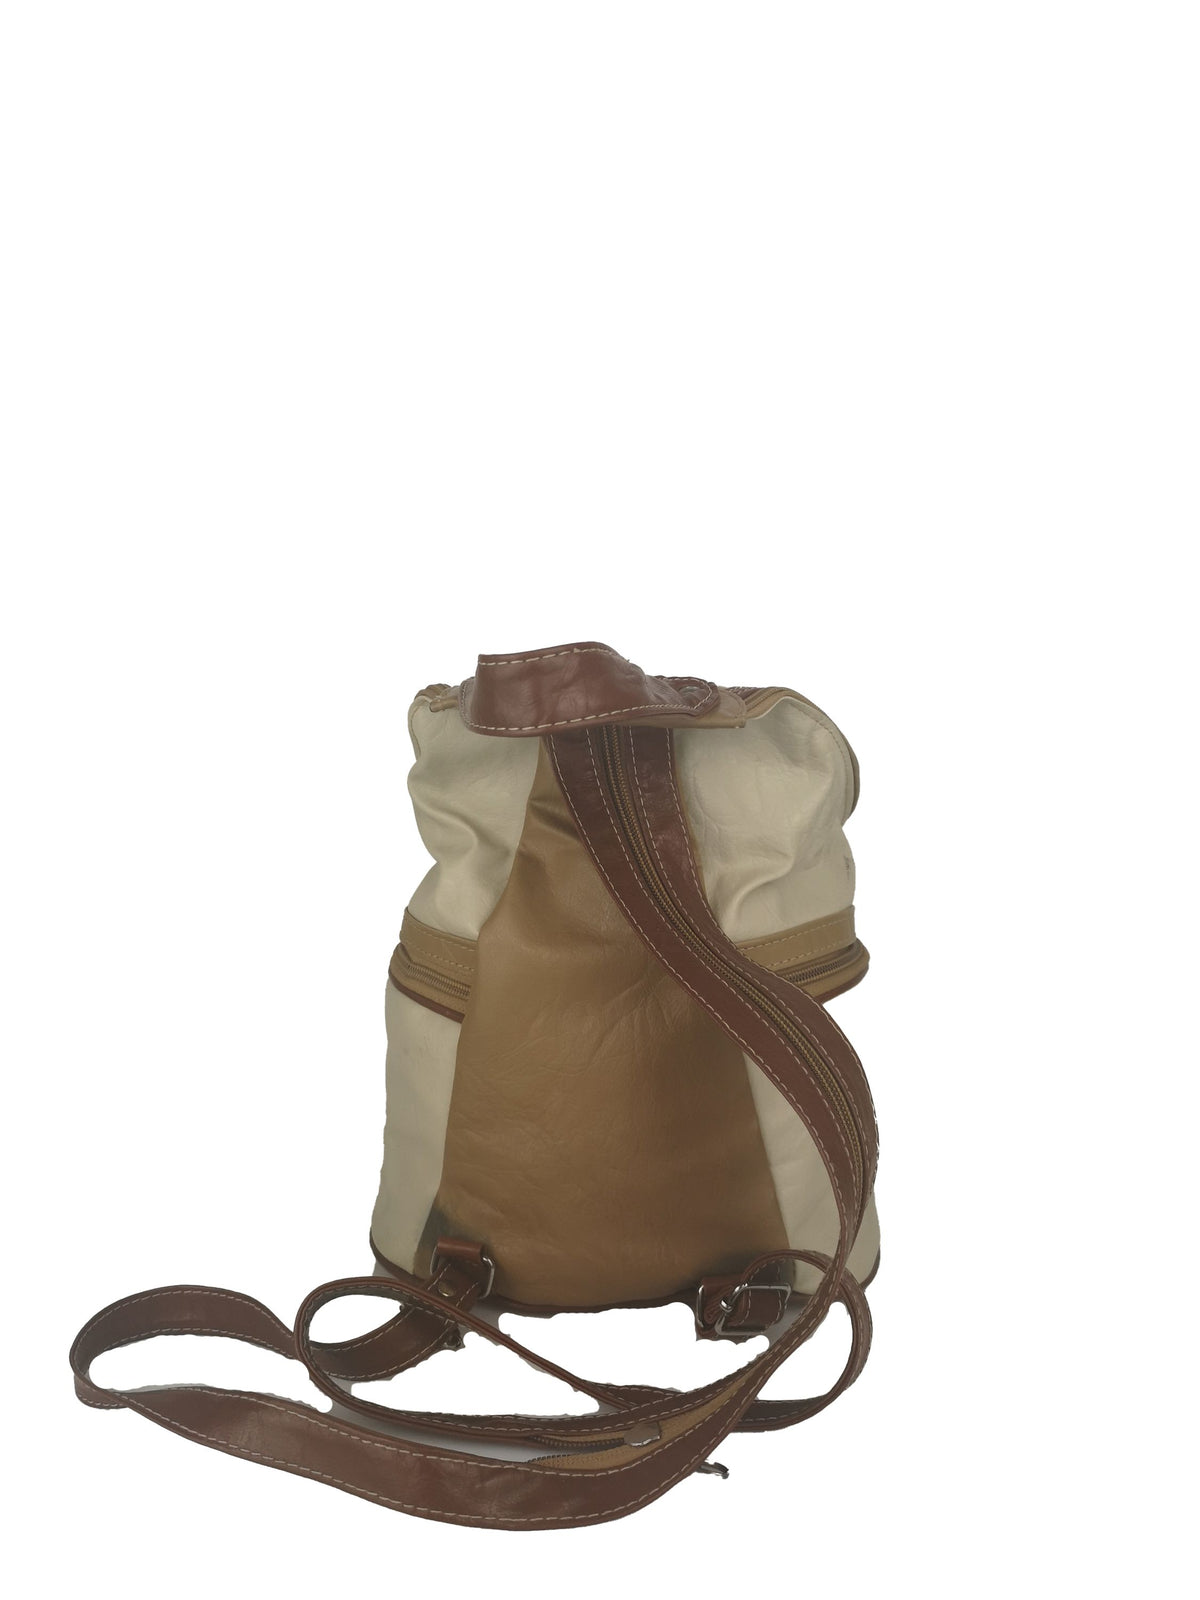 Die Taschenlady Rucksack